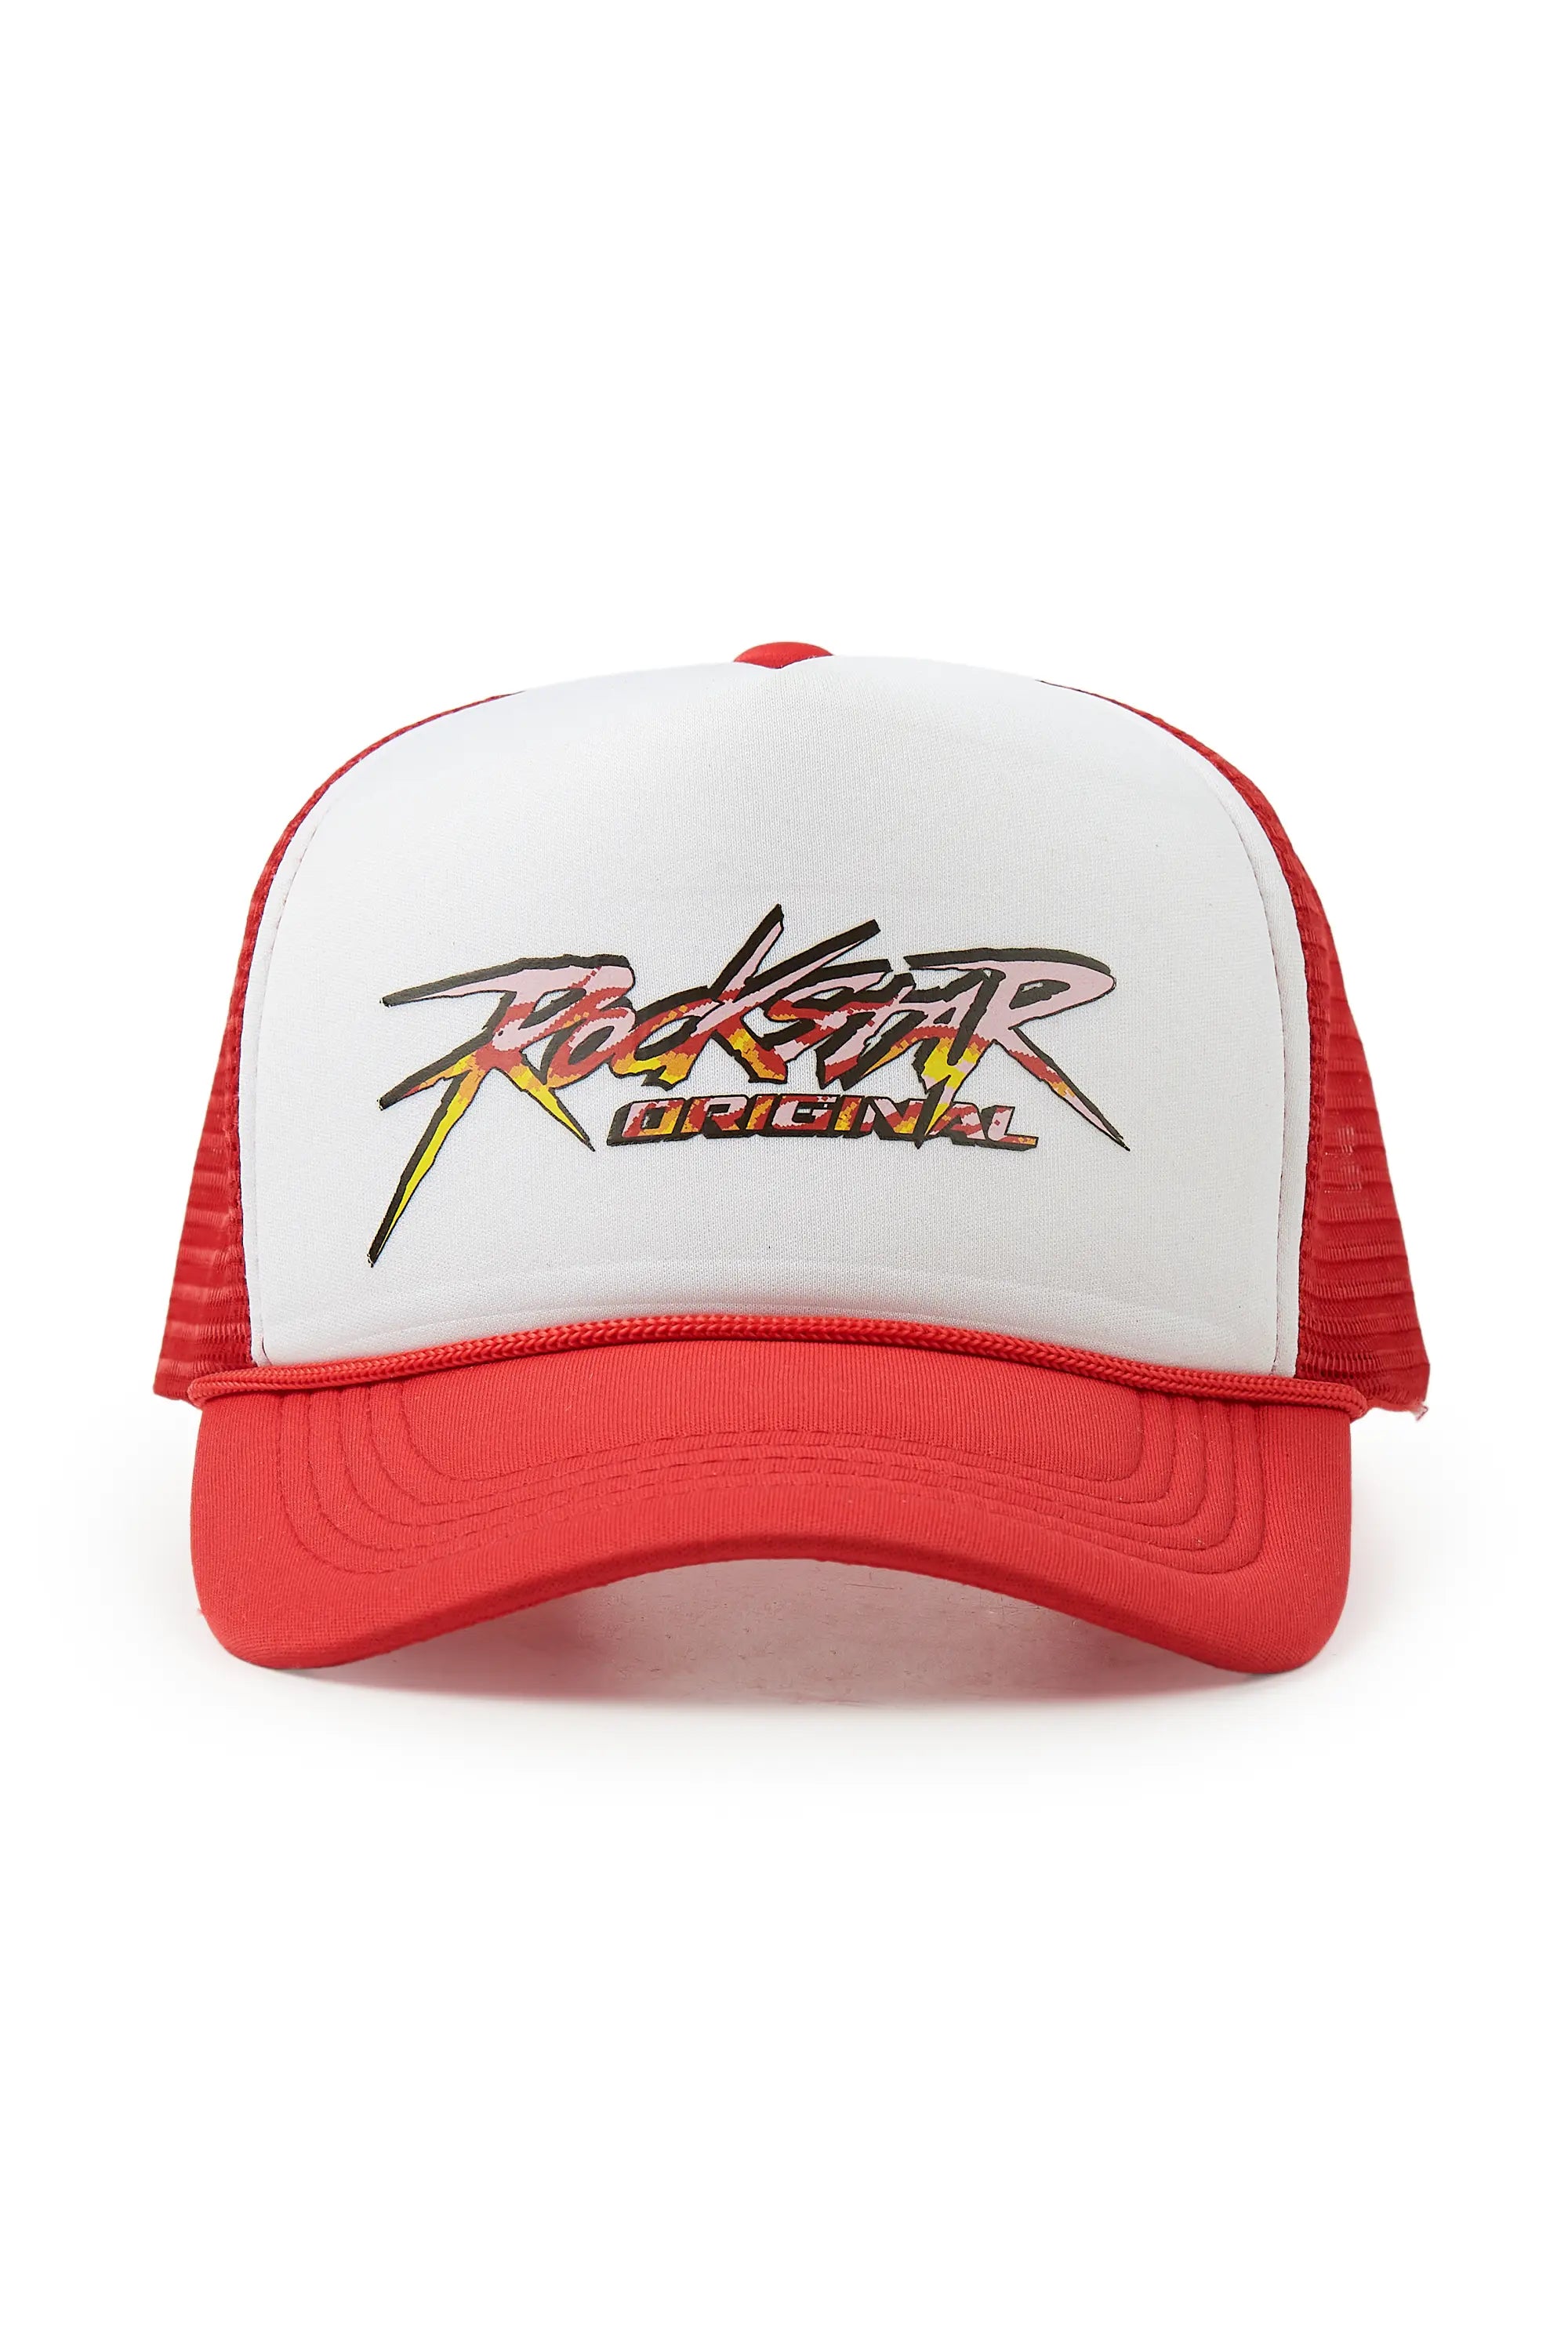 Kalliope White/Red Trucker Hat